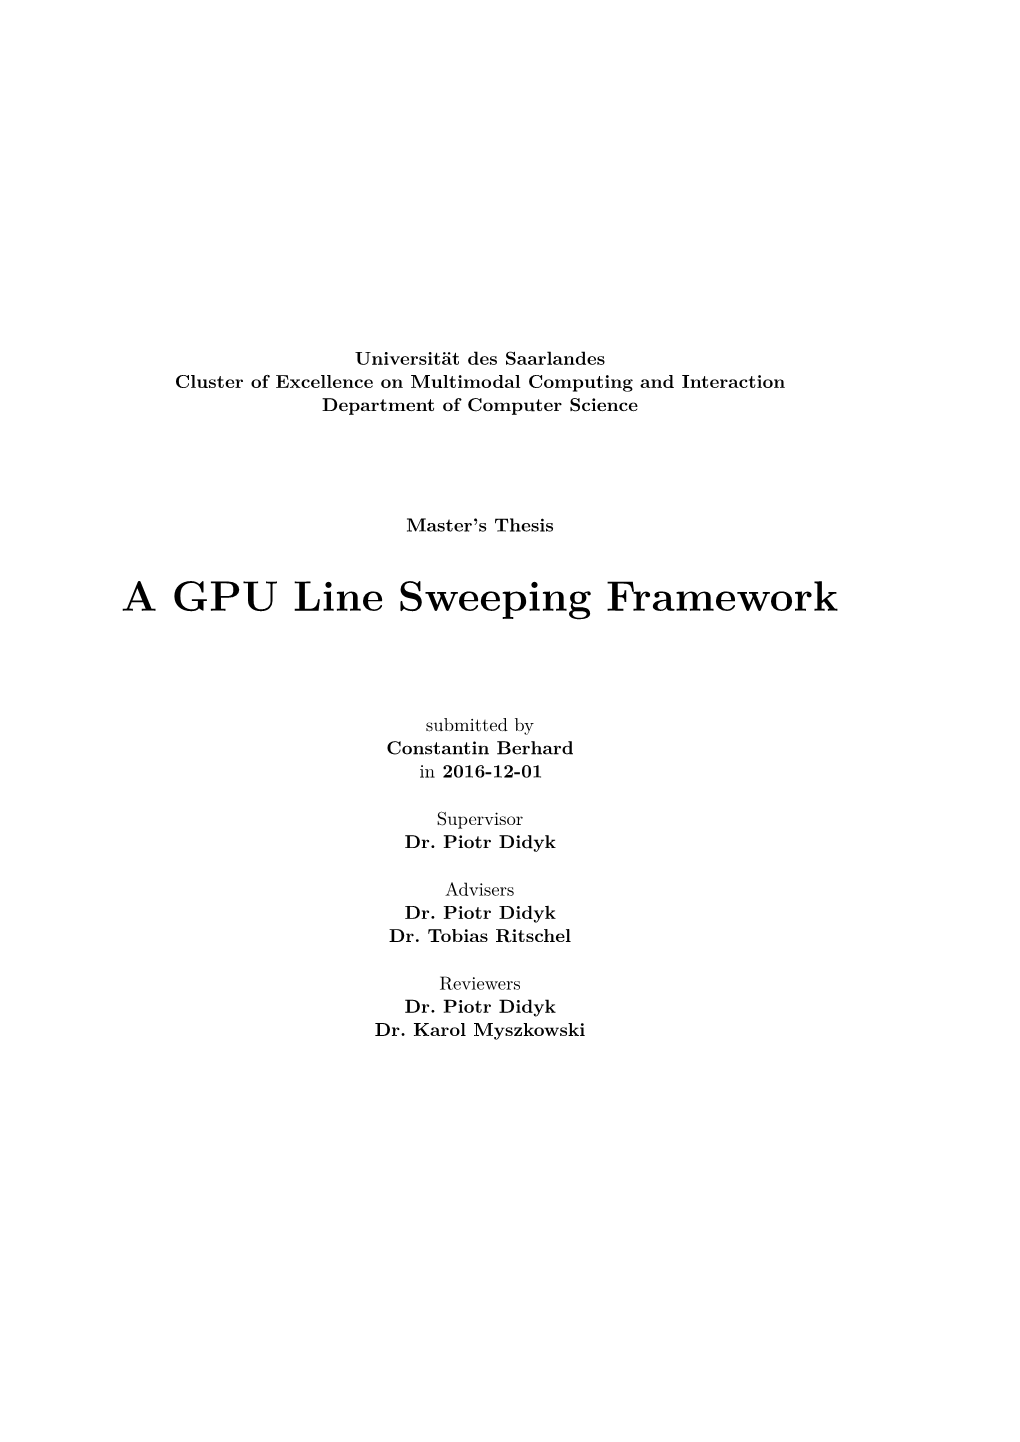 A GPU Line Sweeping Framework